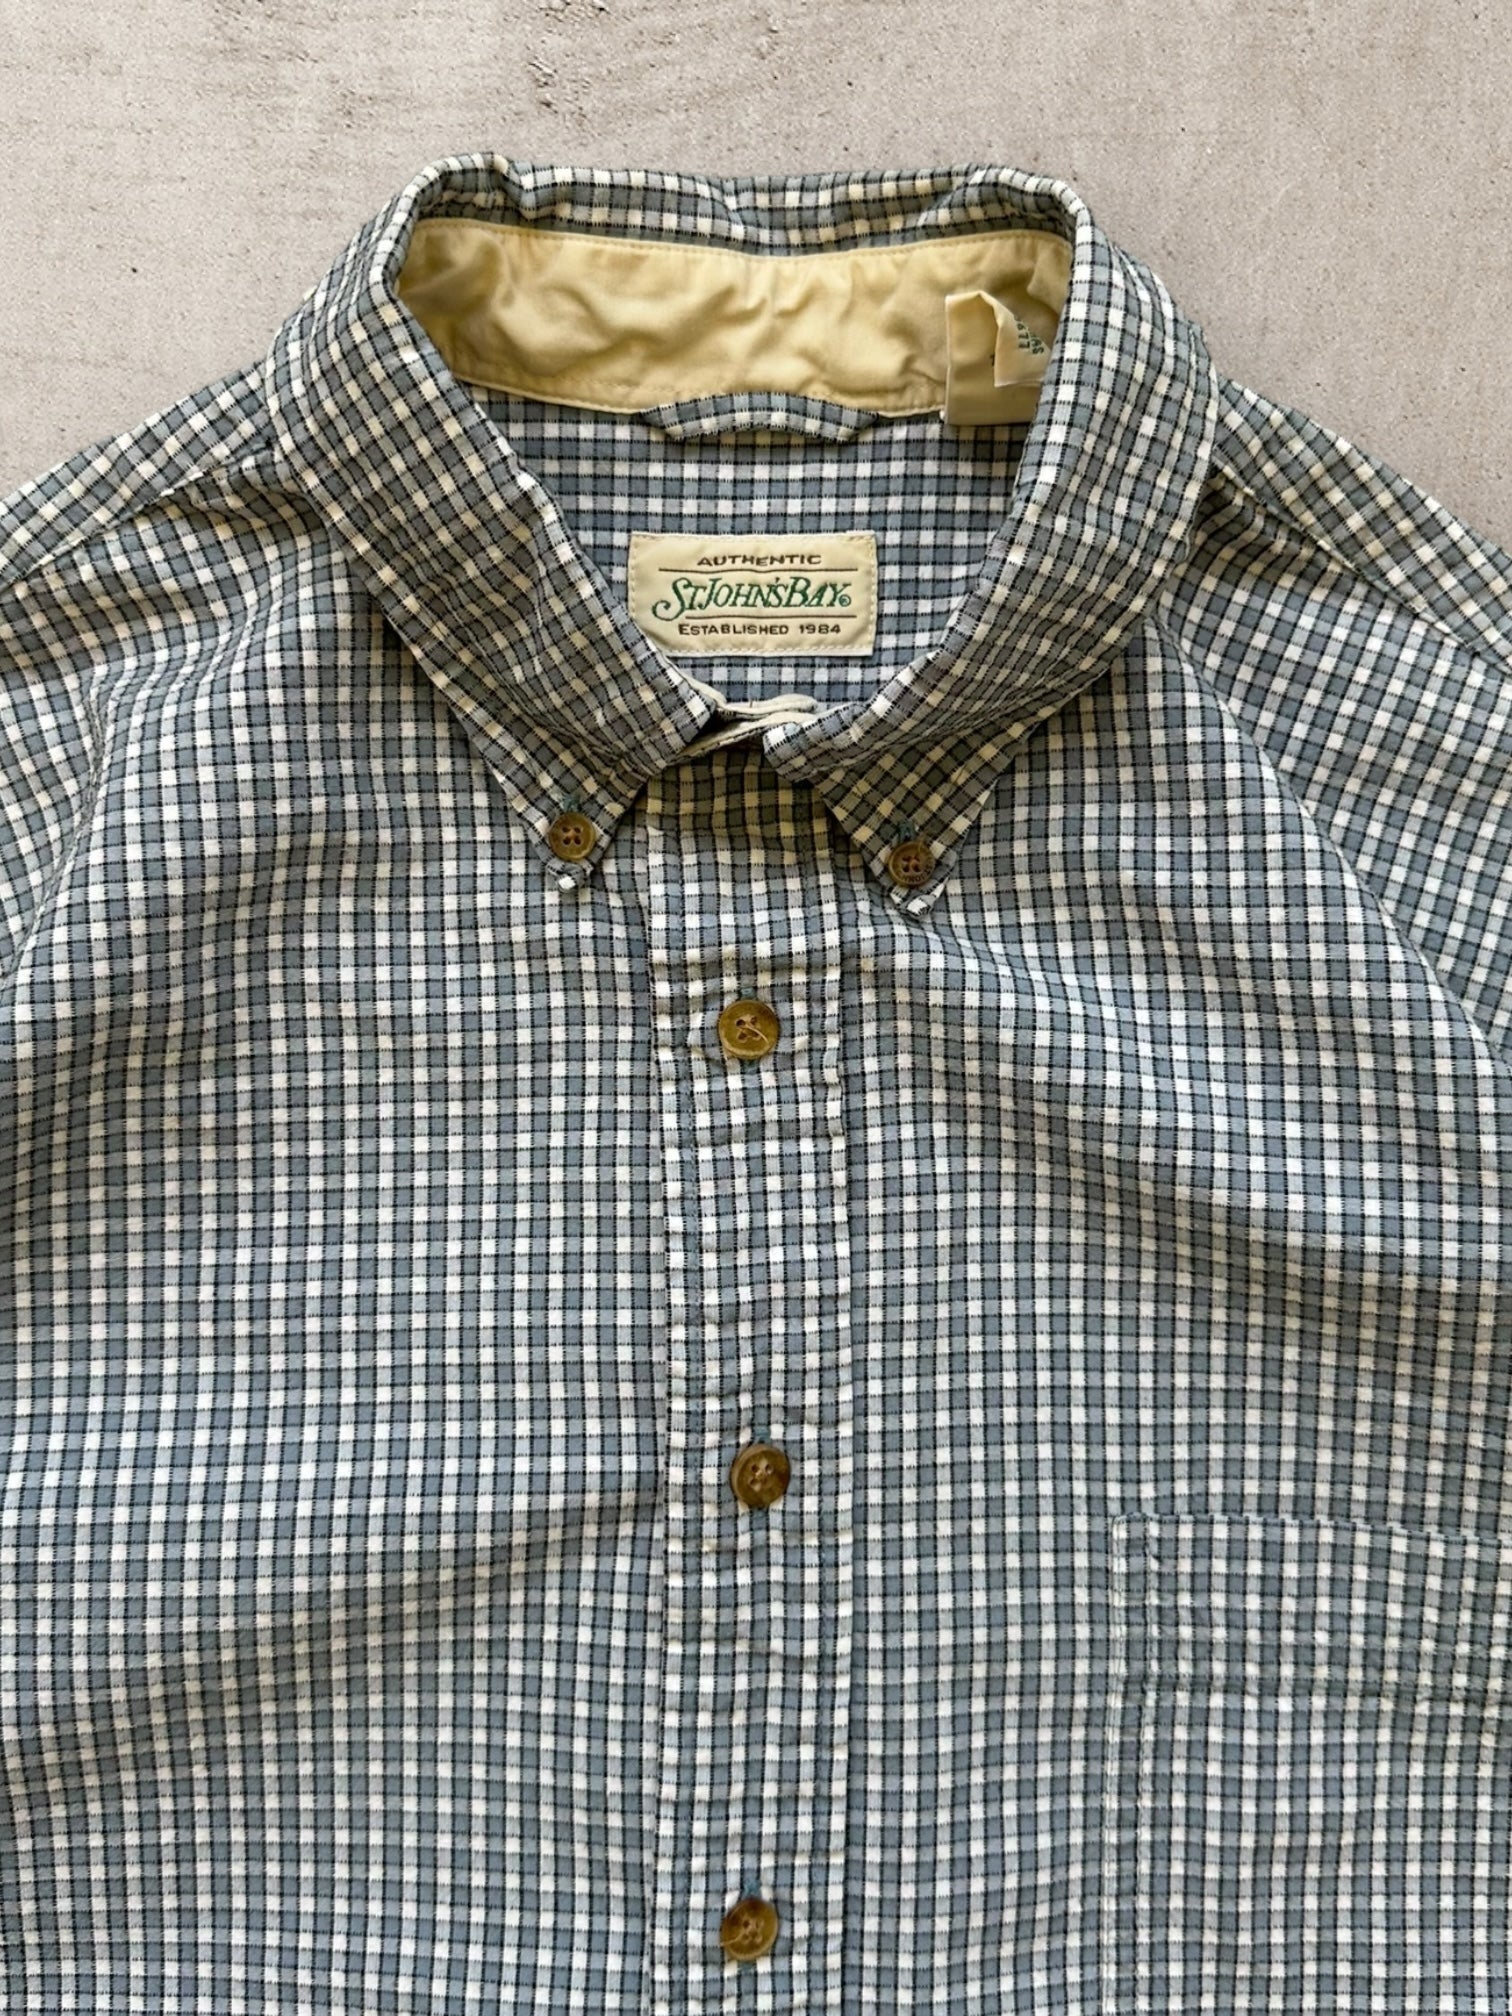 00's Plaid Button Up Shirt - Large